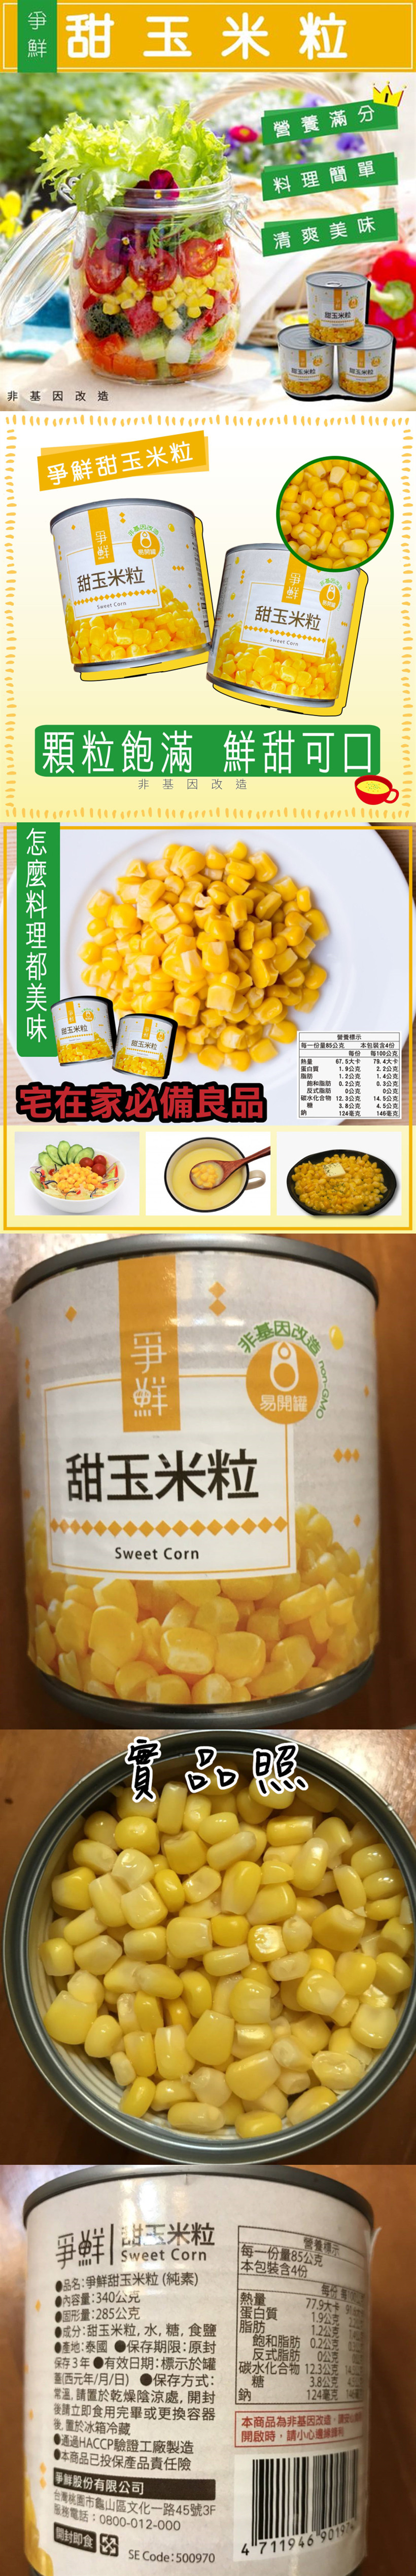 【極鮮配】爭鮮易開罐玉米粒 (340g/罐) 爭鮮玉米罐頭